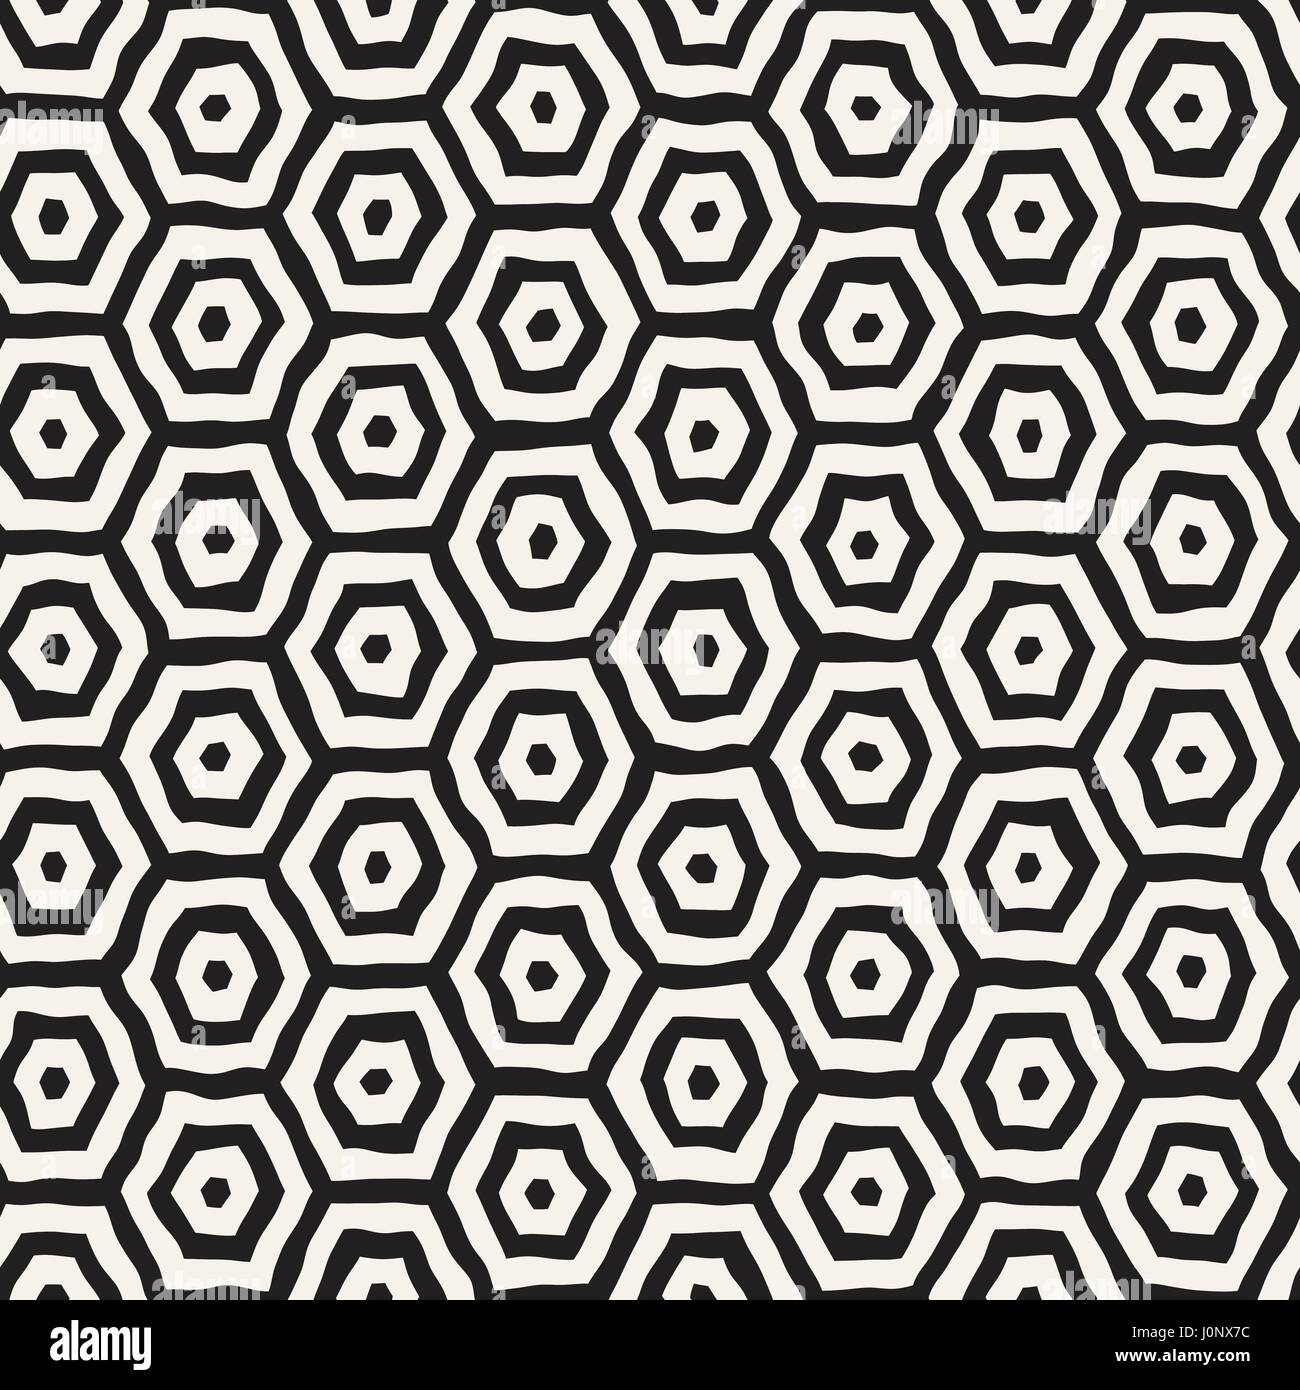 Un motif en noir et blanc avec treillis hexagonal. Monochrome créatif nid d'arrière-plan. à la main Design élégant pinceau abstrait Illustration de Vecteur